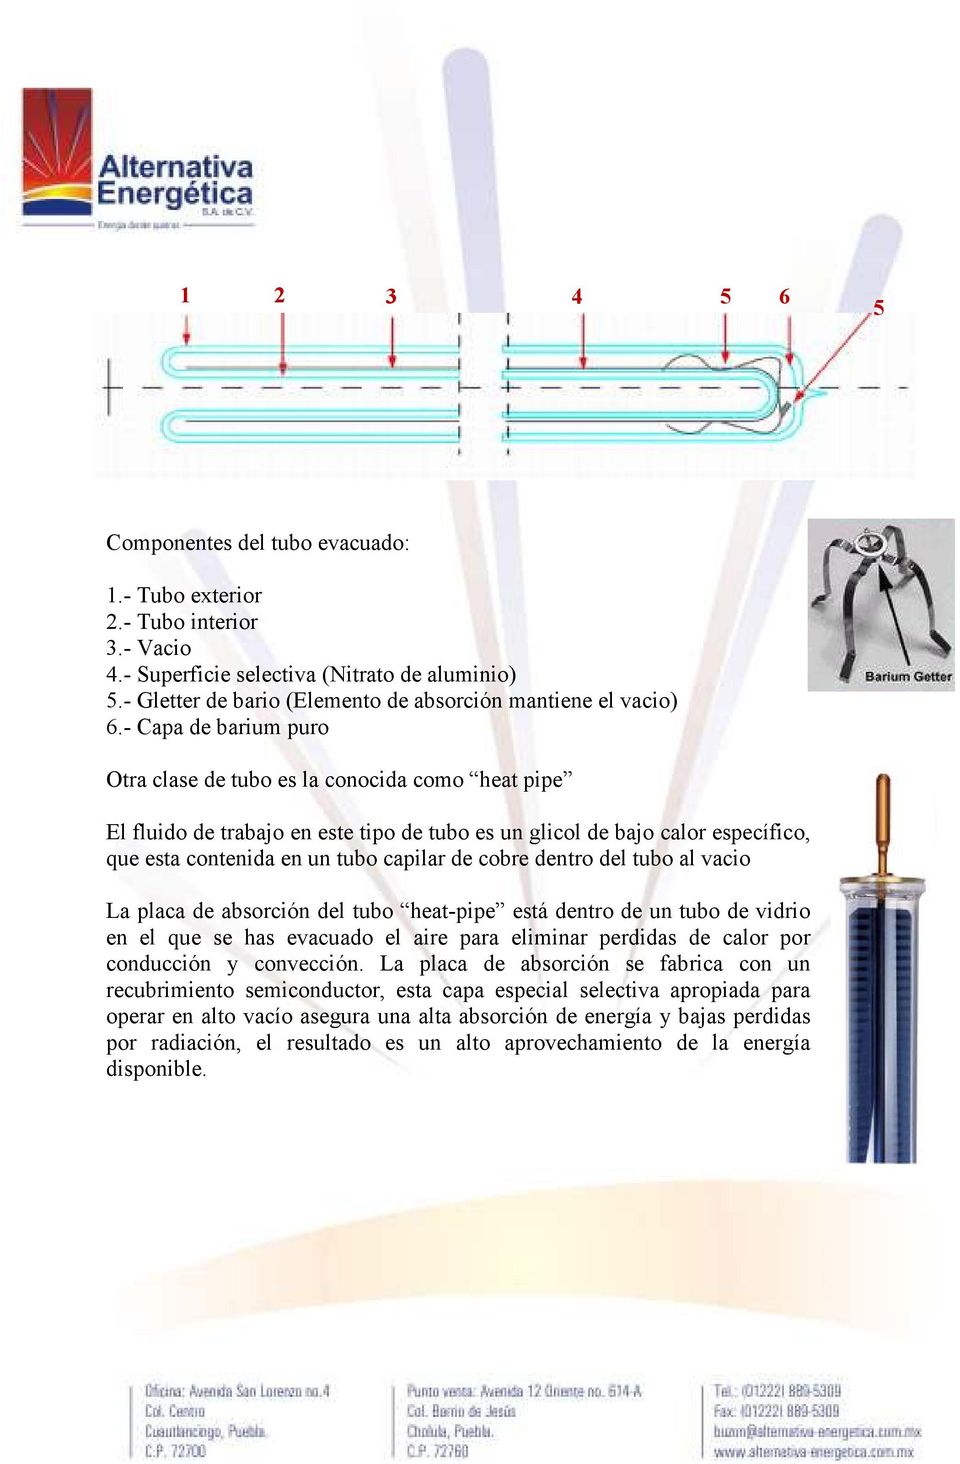 - Capa de barium puro Otra clase de tubo es la conocida como heat pipe El fluido de trabajo en este tipo de tubo es un glicol de bajo calor específico, que esta contenida en un tubo capilar de cobre